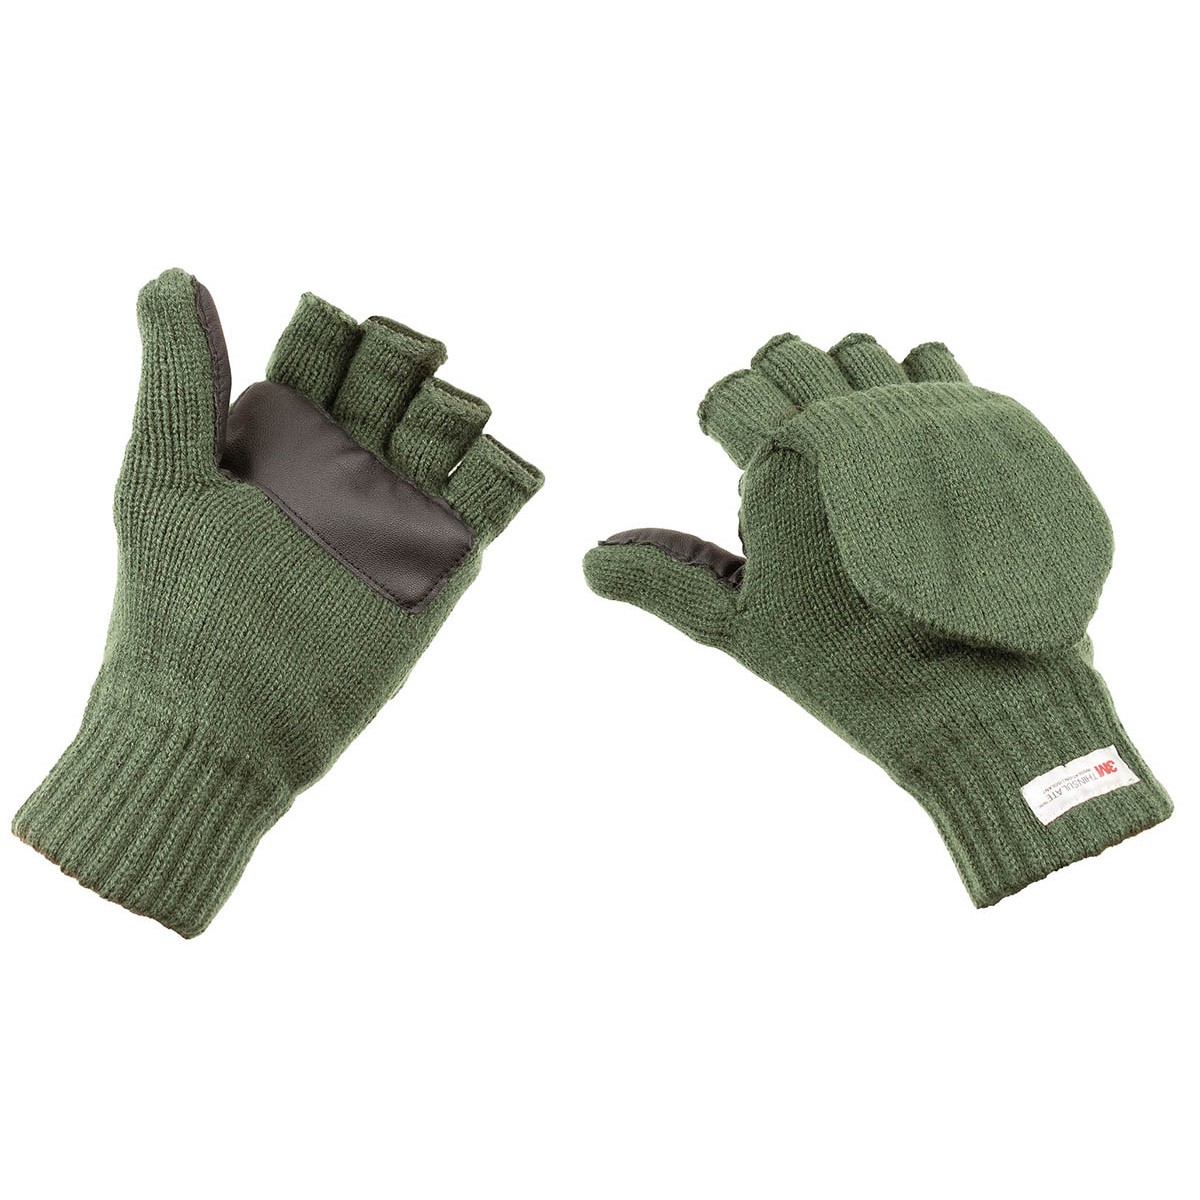 Pletené rukavice bez prstů s podšívkou MFH Thinsulate - olivové, XL